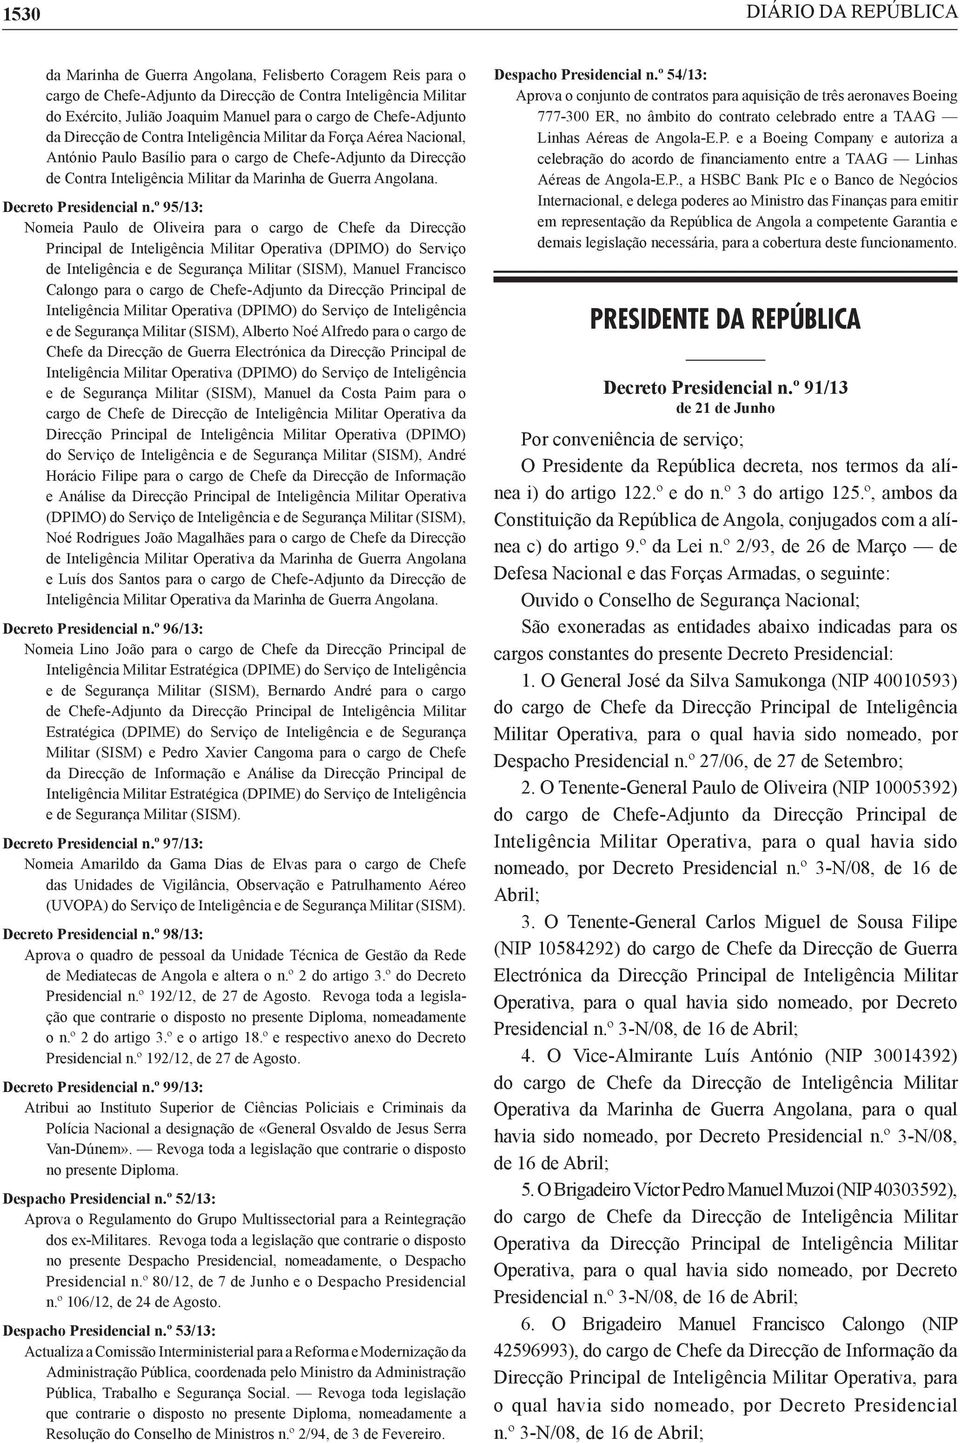 Guerra Angolana. Decreto Presidencial n.